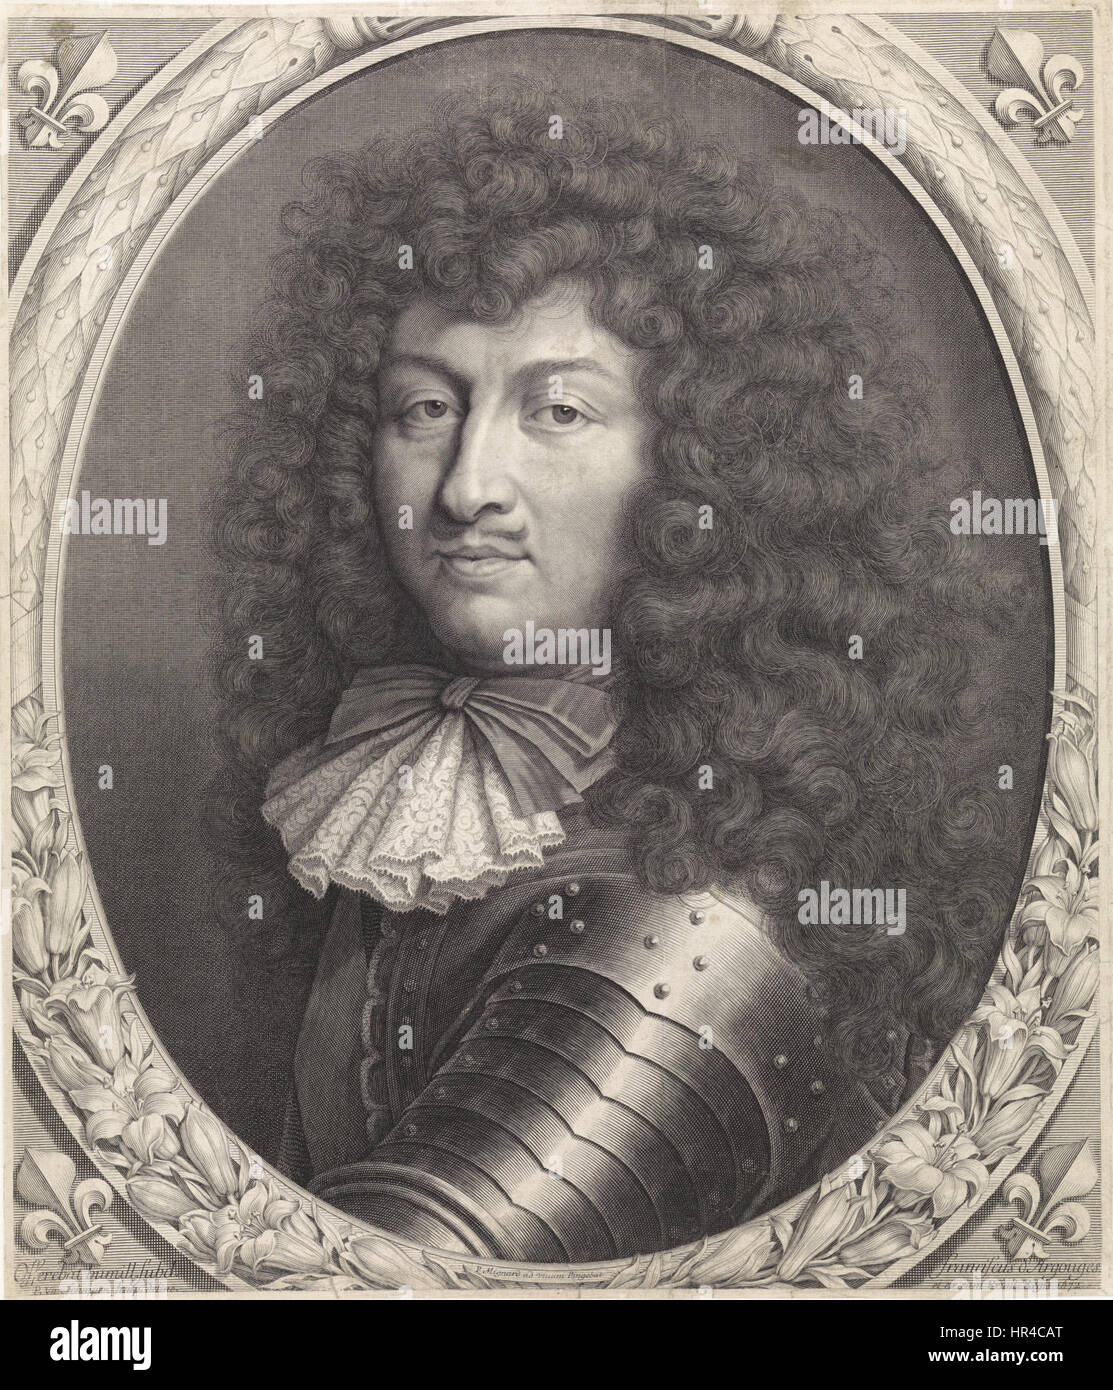 Pieter van Schuppen - Portrait of Louis XIV of France Stock Photo